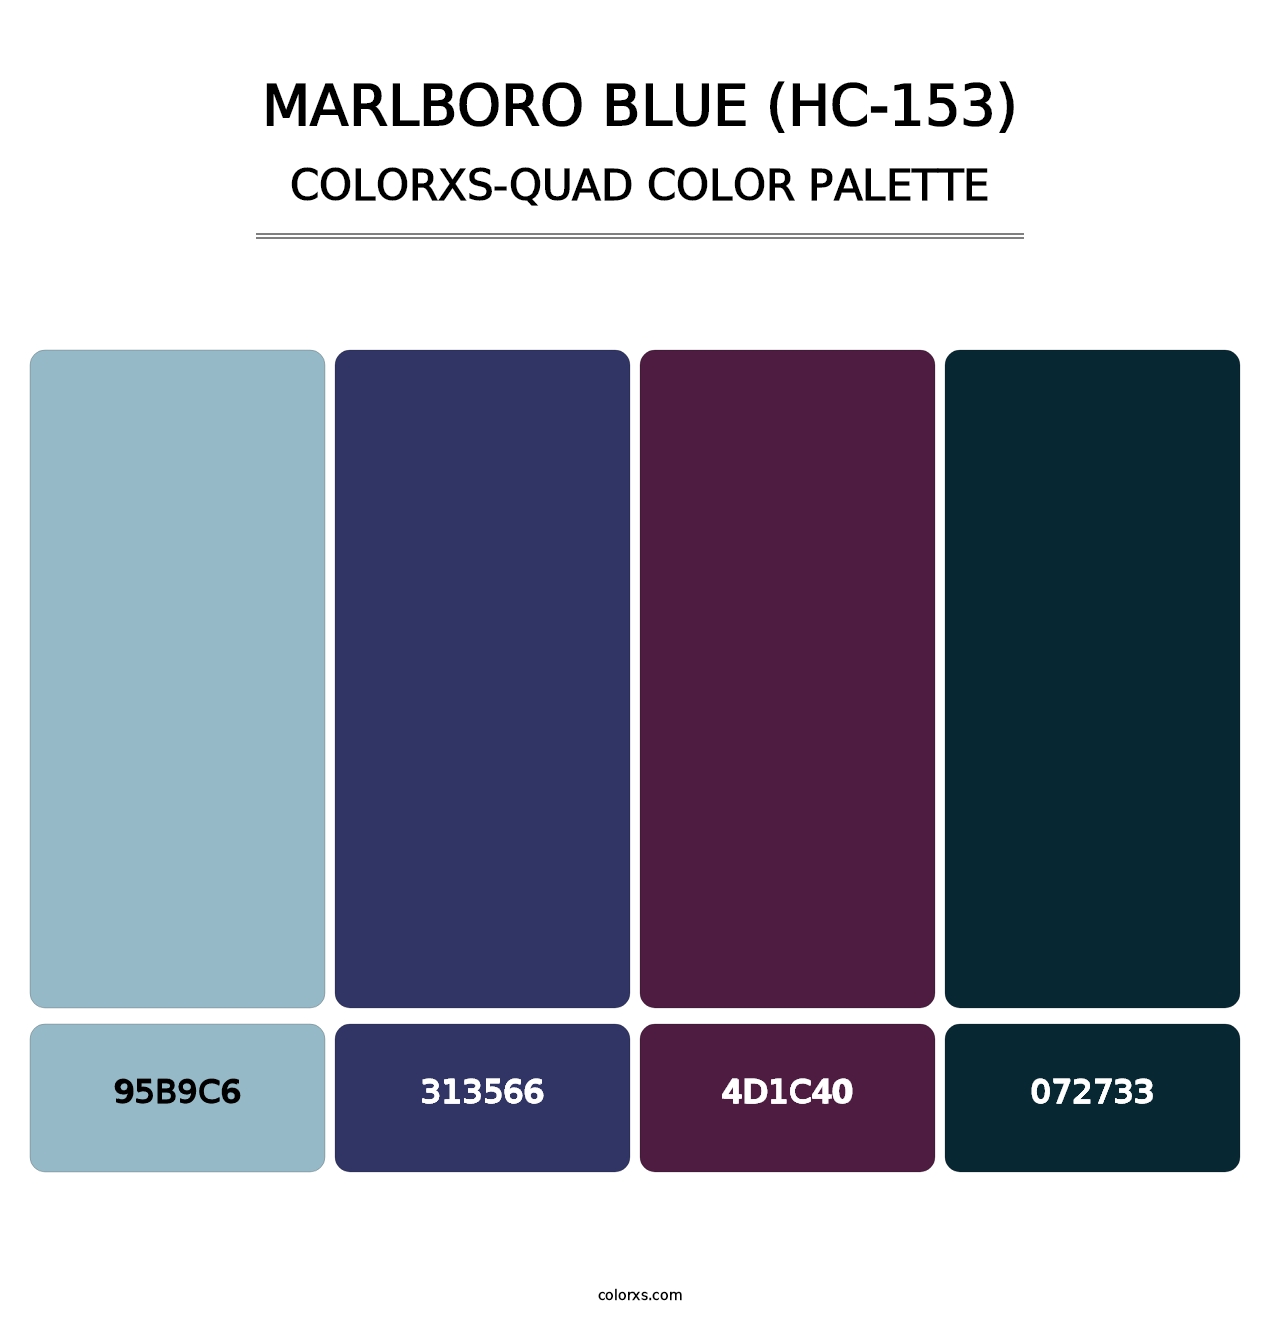 Marlboro Blue (HC-153) - Colorxs Quad Palette